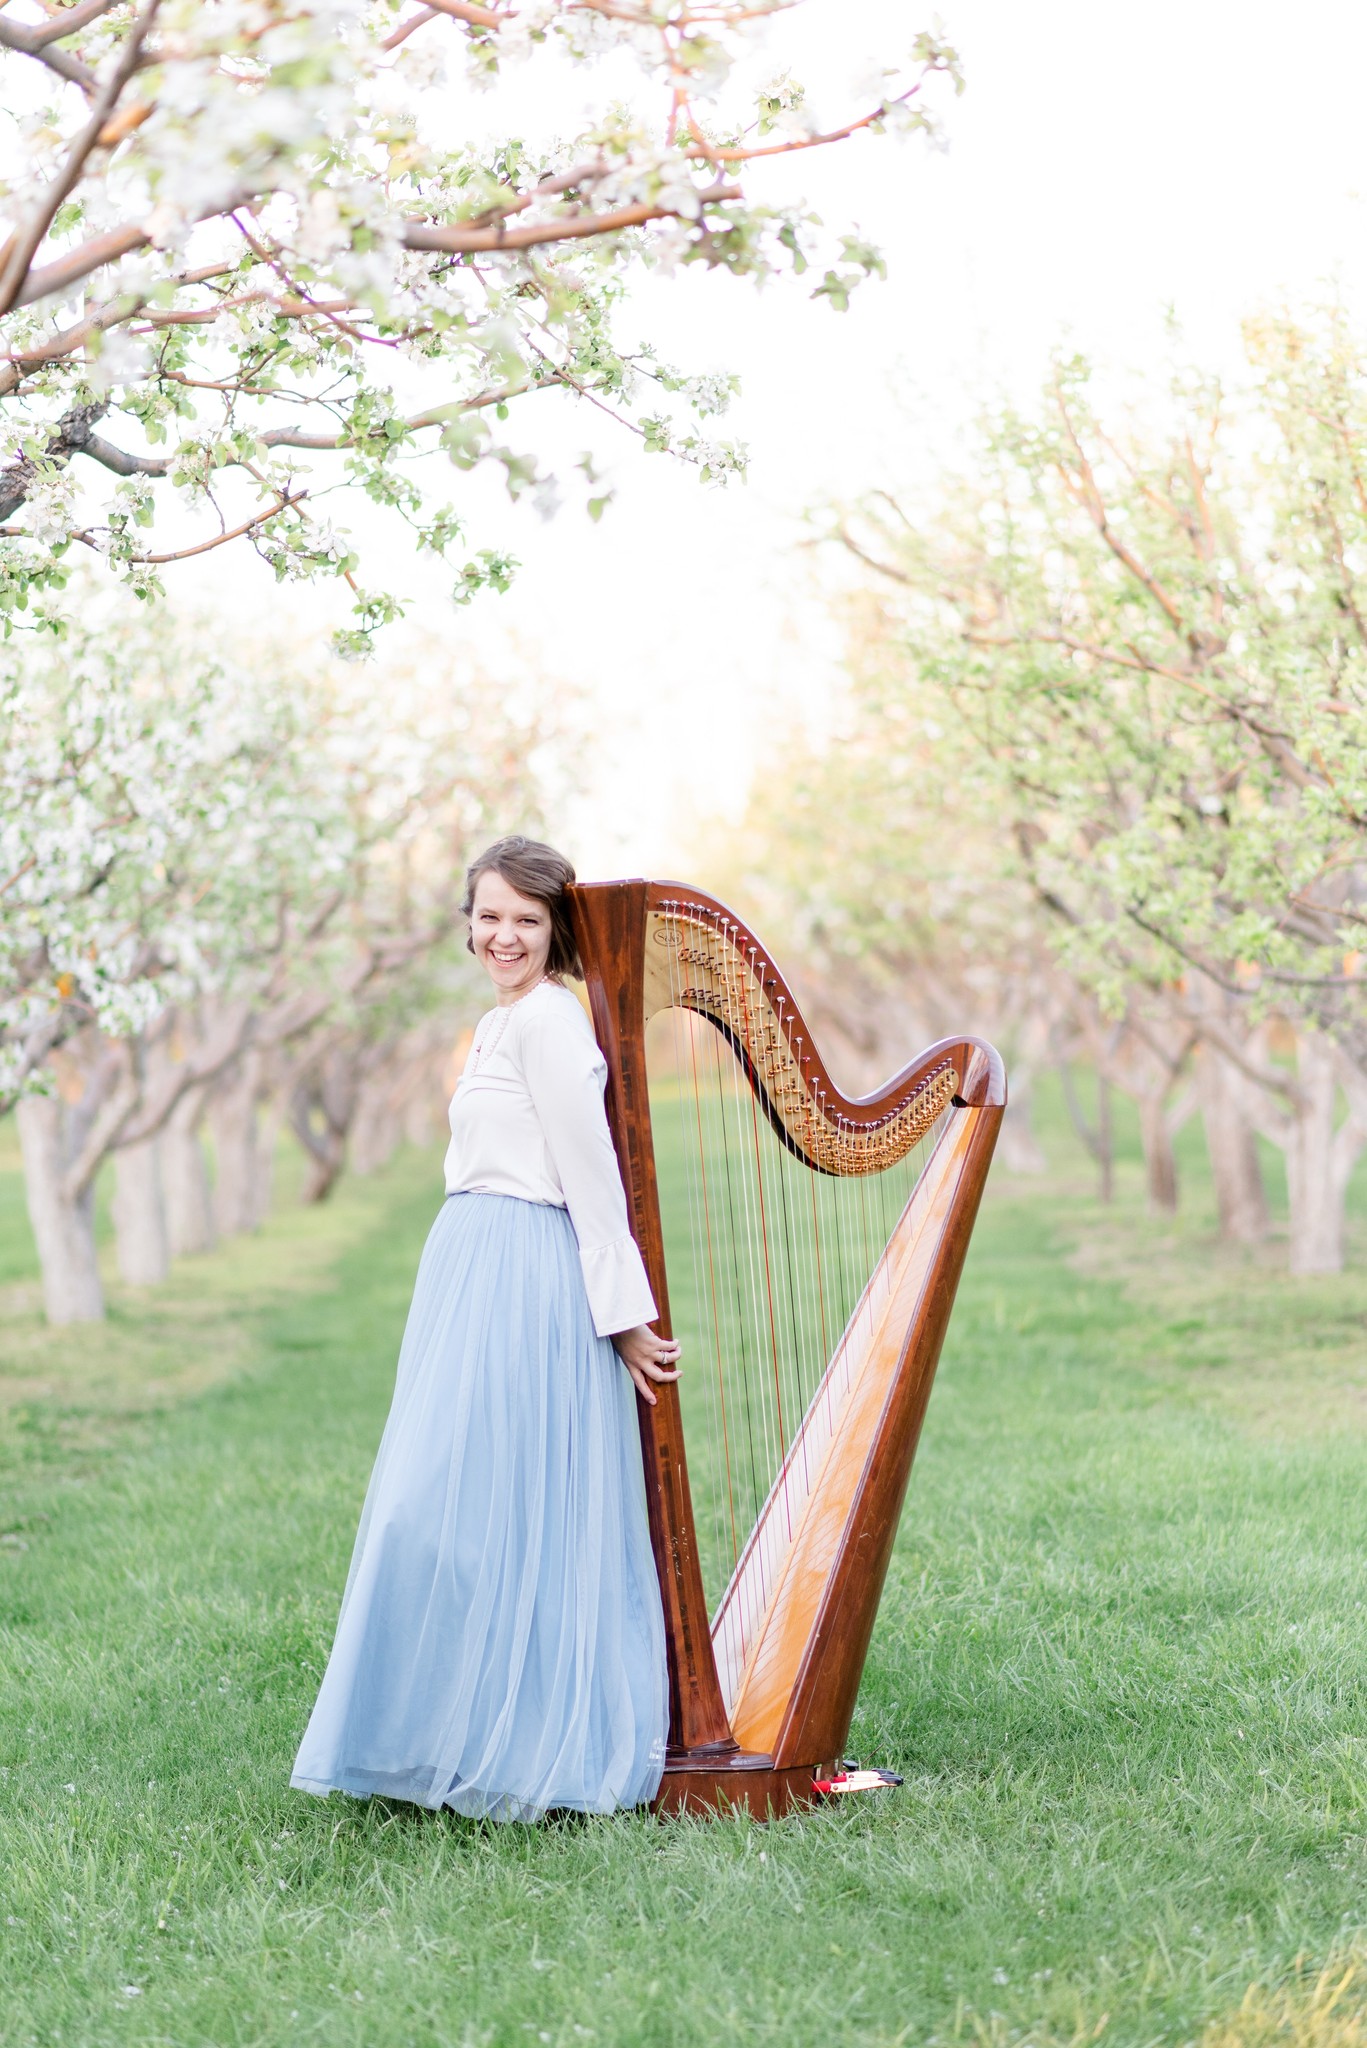 jill the harp teacher